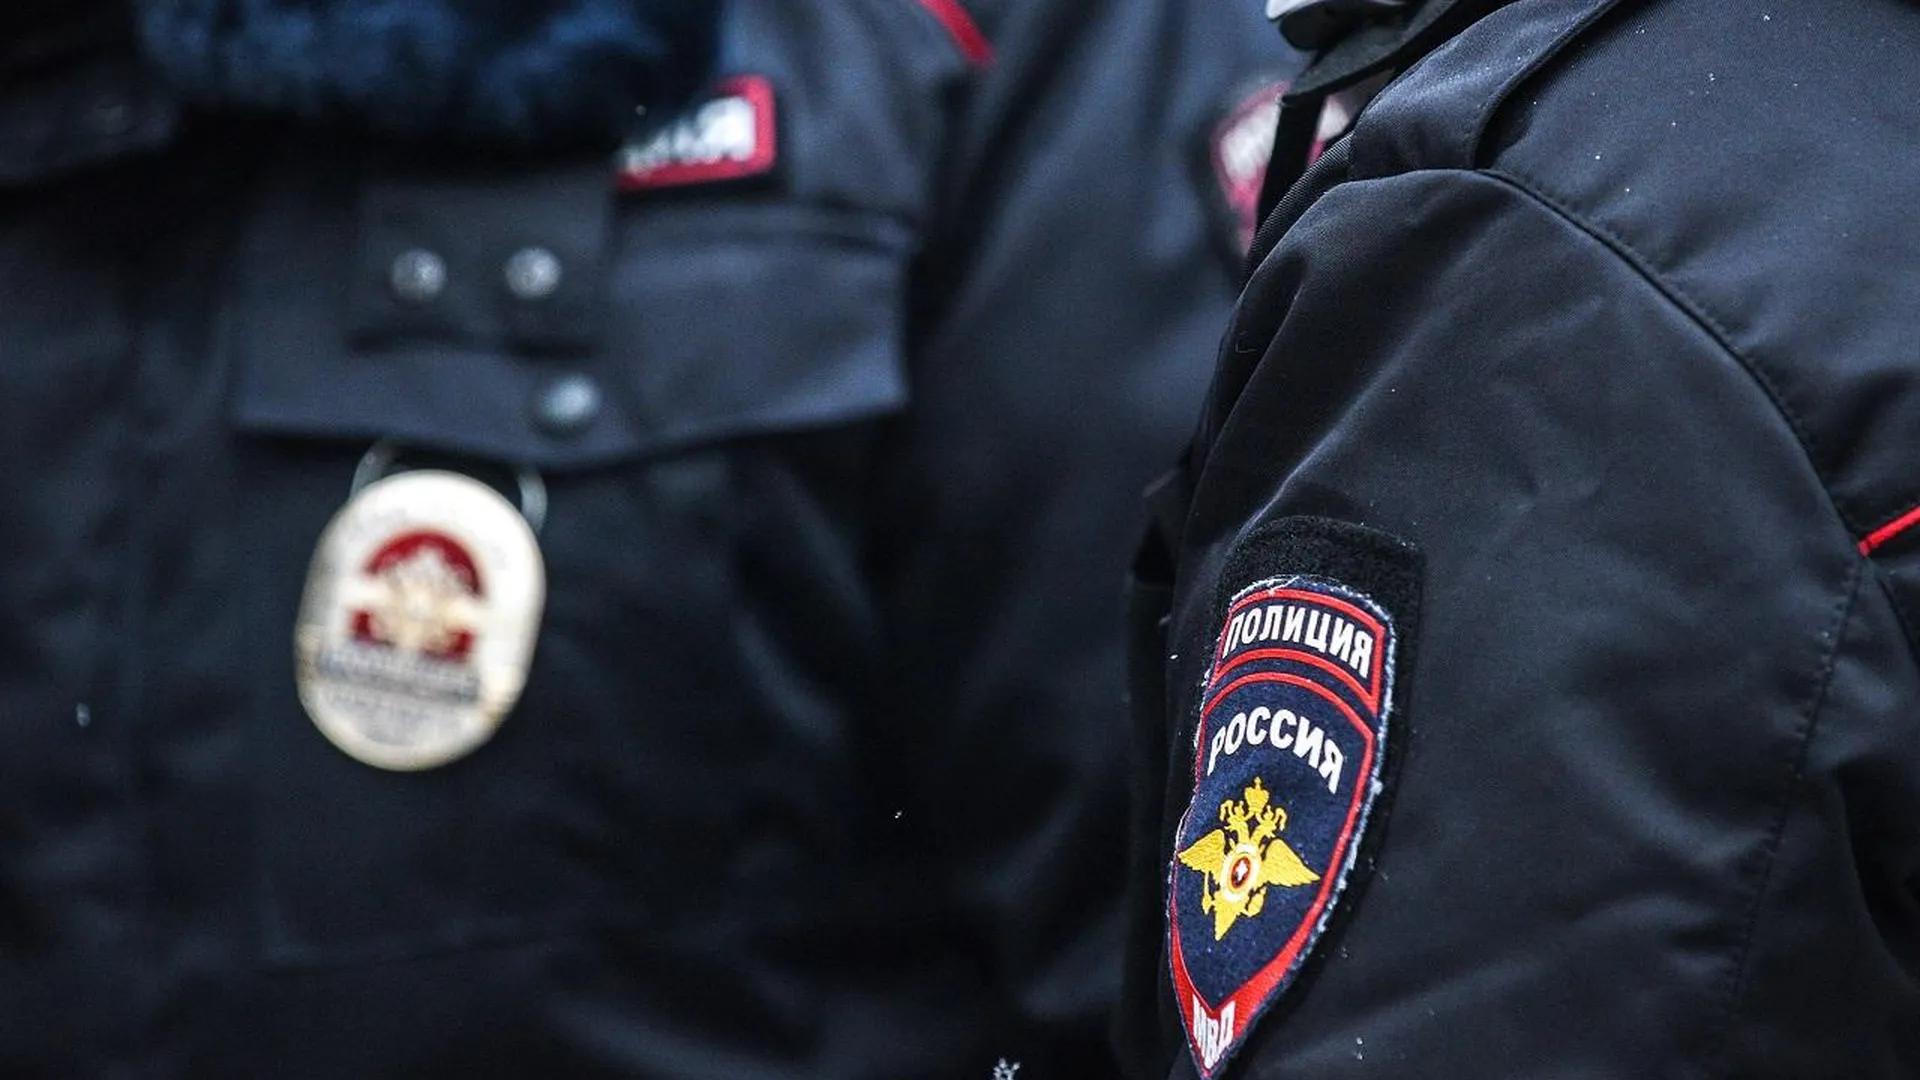 Охранник подмосковной компании украл из сейфа организации 200 тысяч рублей